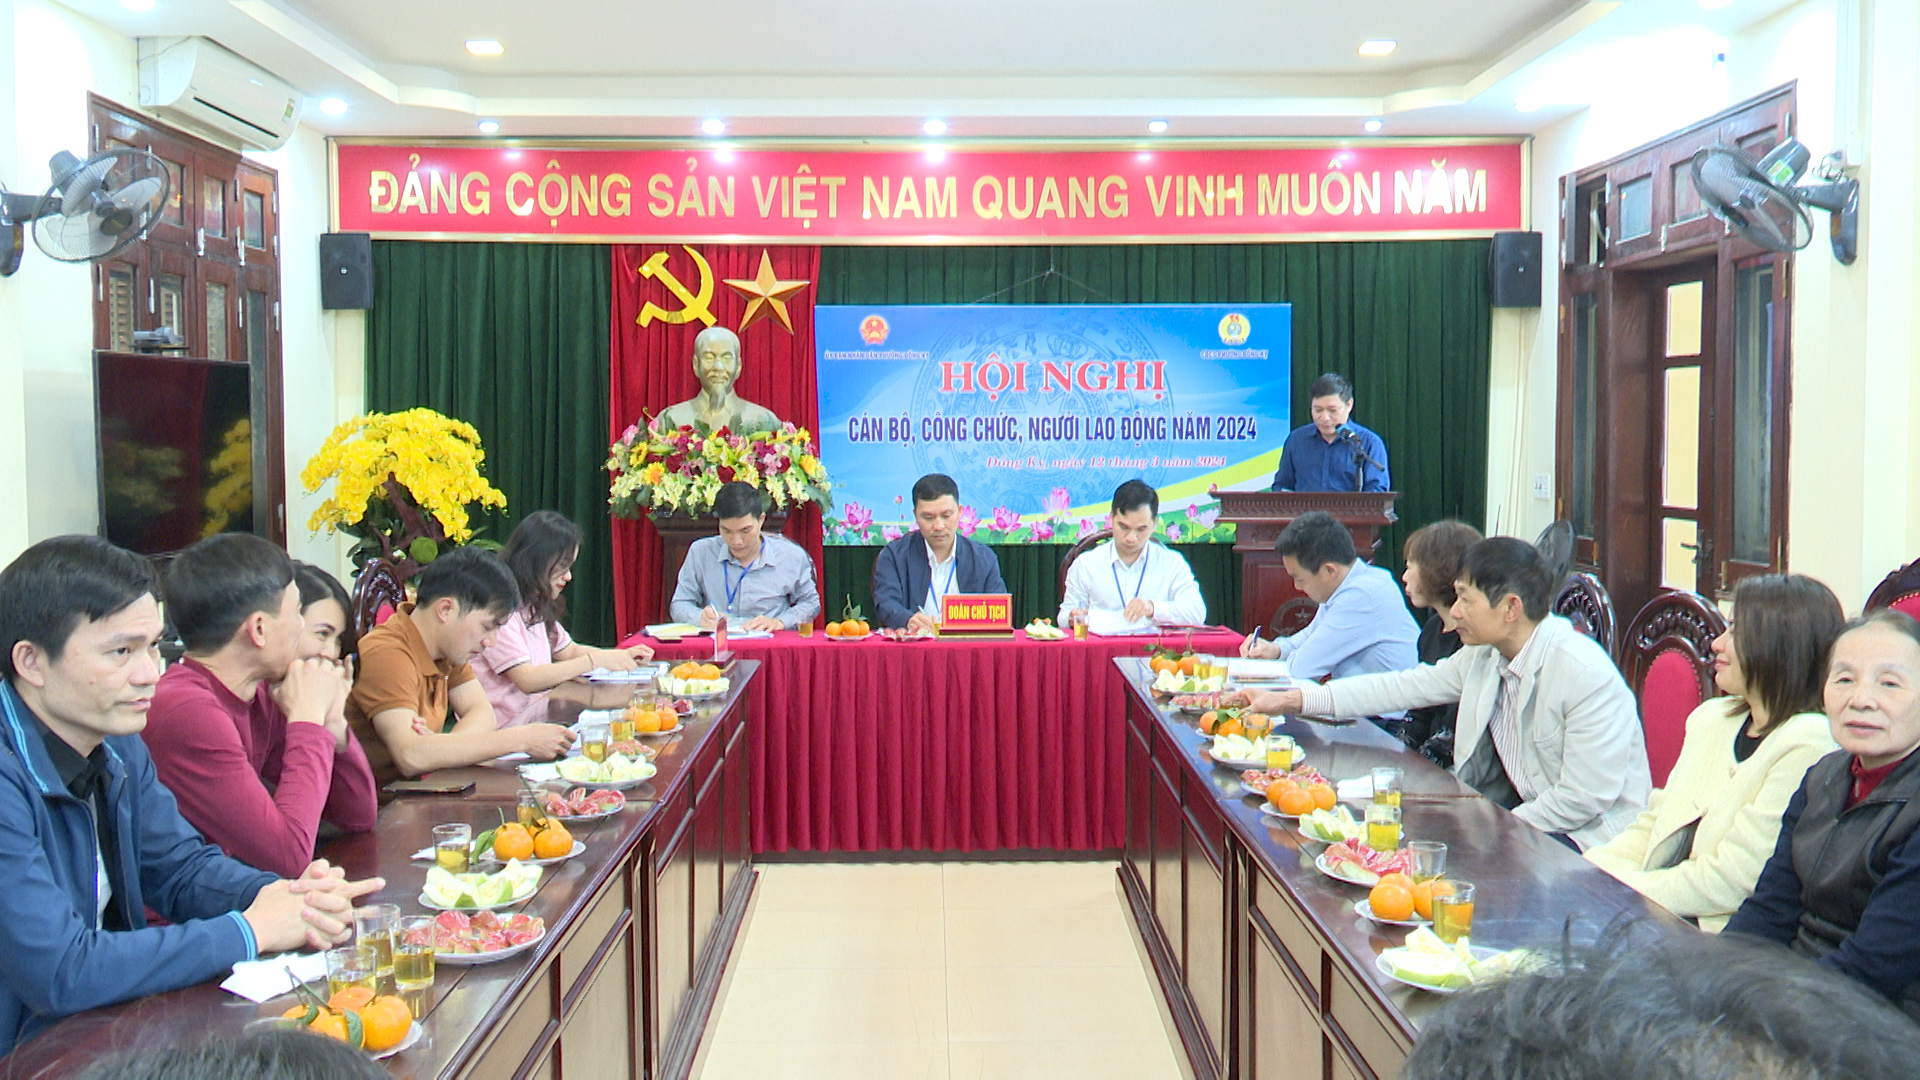 Công đoàn phường Đồng Kỵ tổ chức hội nghị cán bộ, công chức, người lao động năm 2024